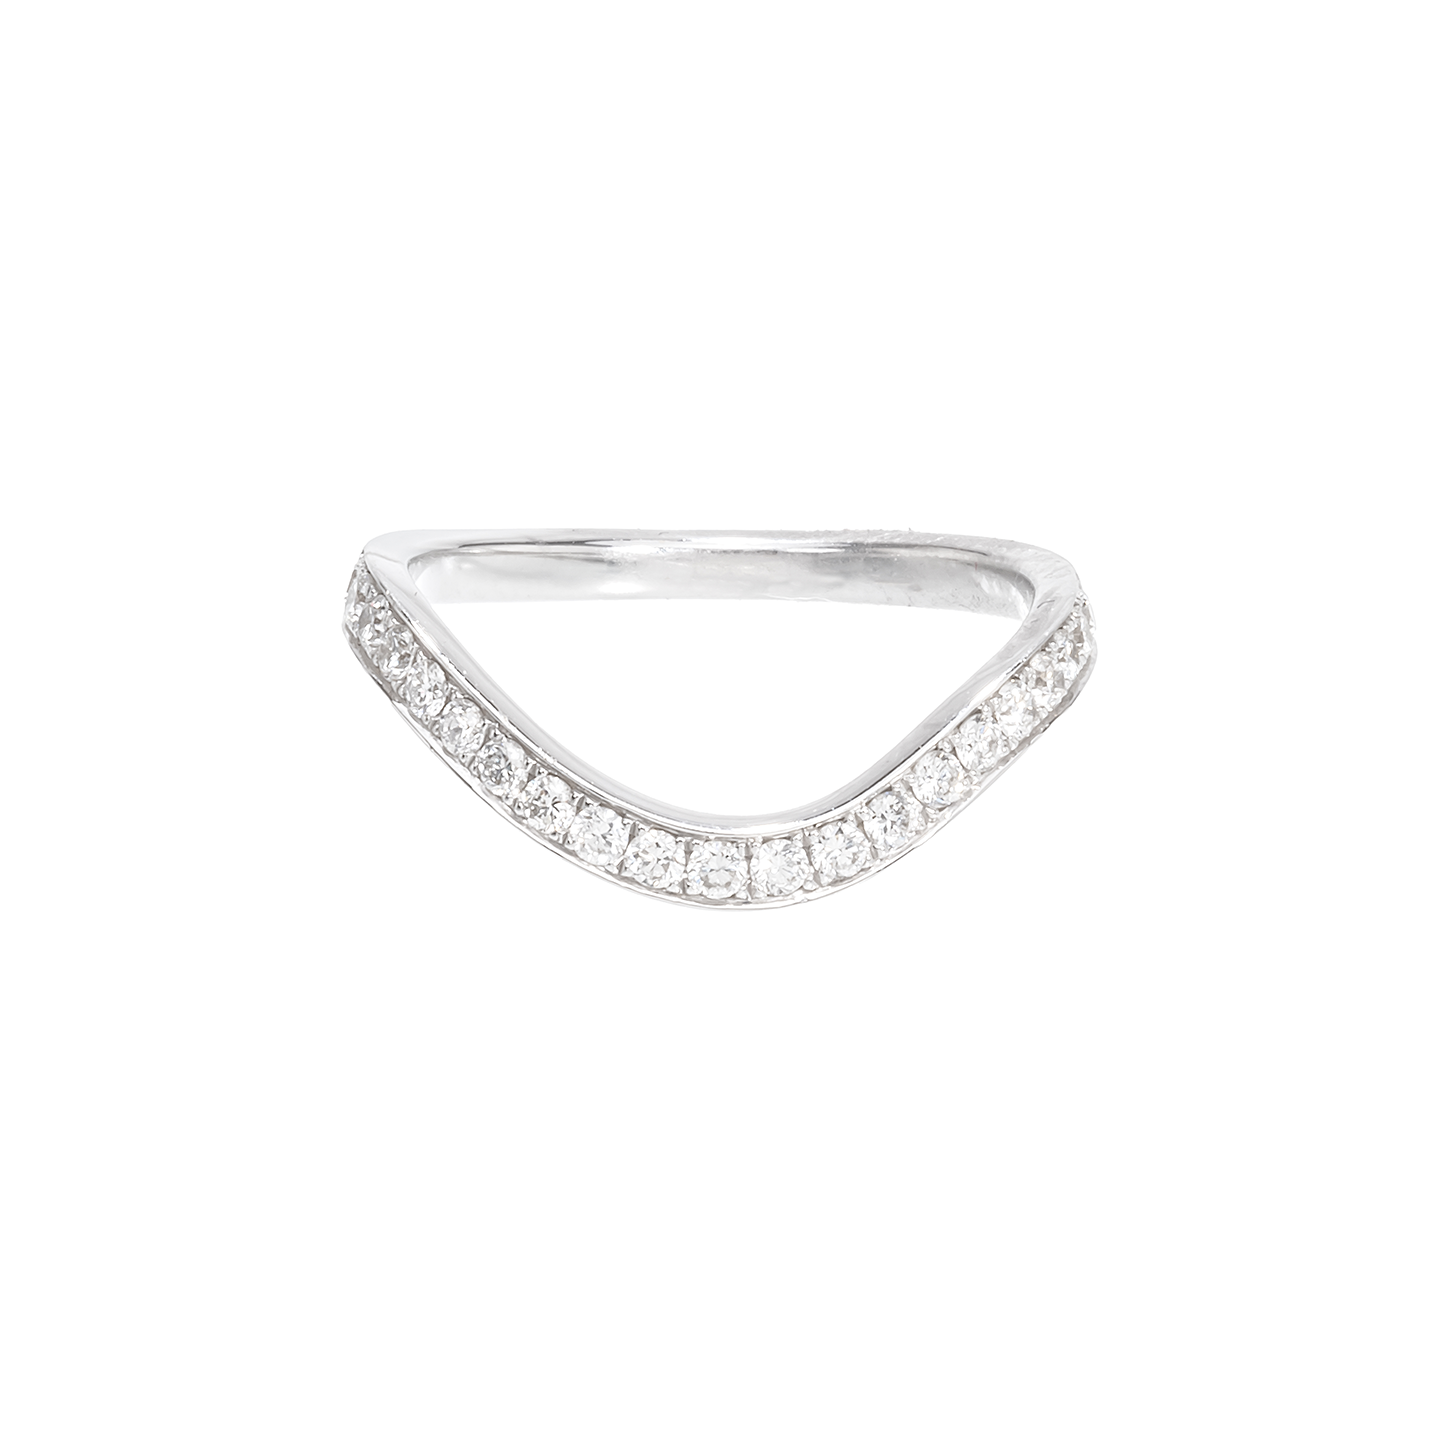 Nikos Koulis 'Feelings' Round White Diamond Ring